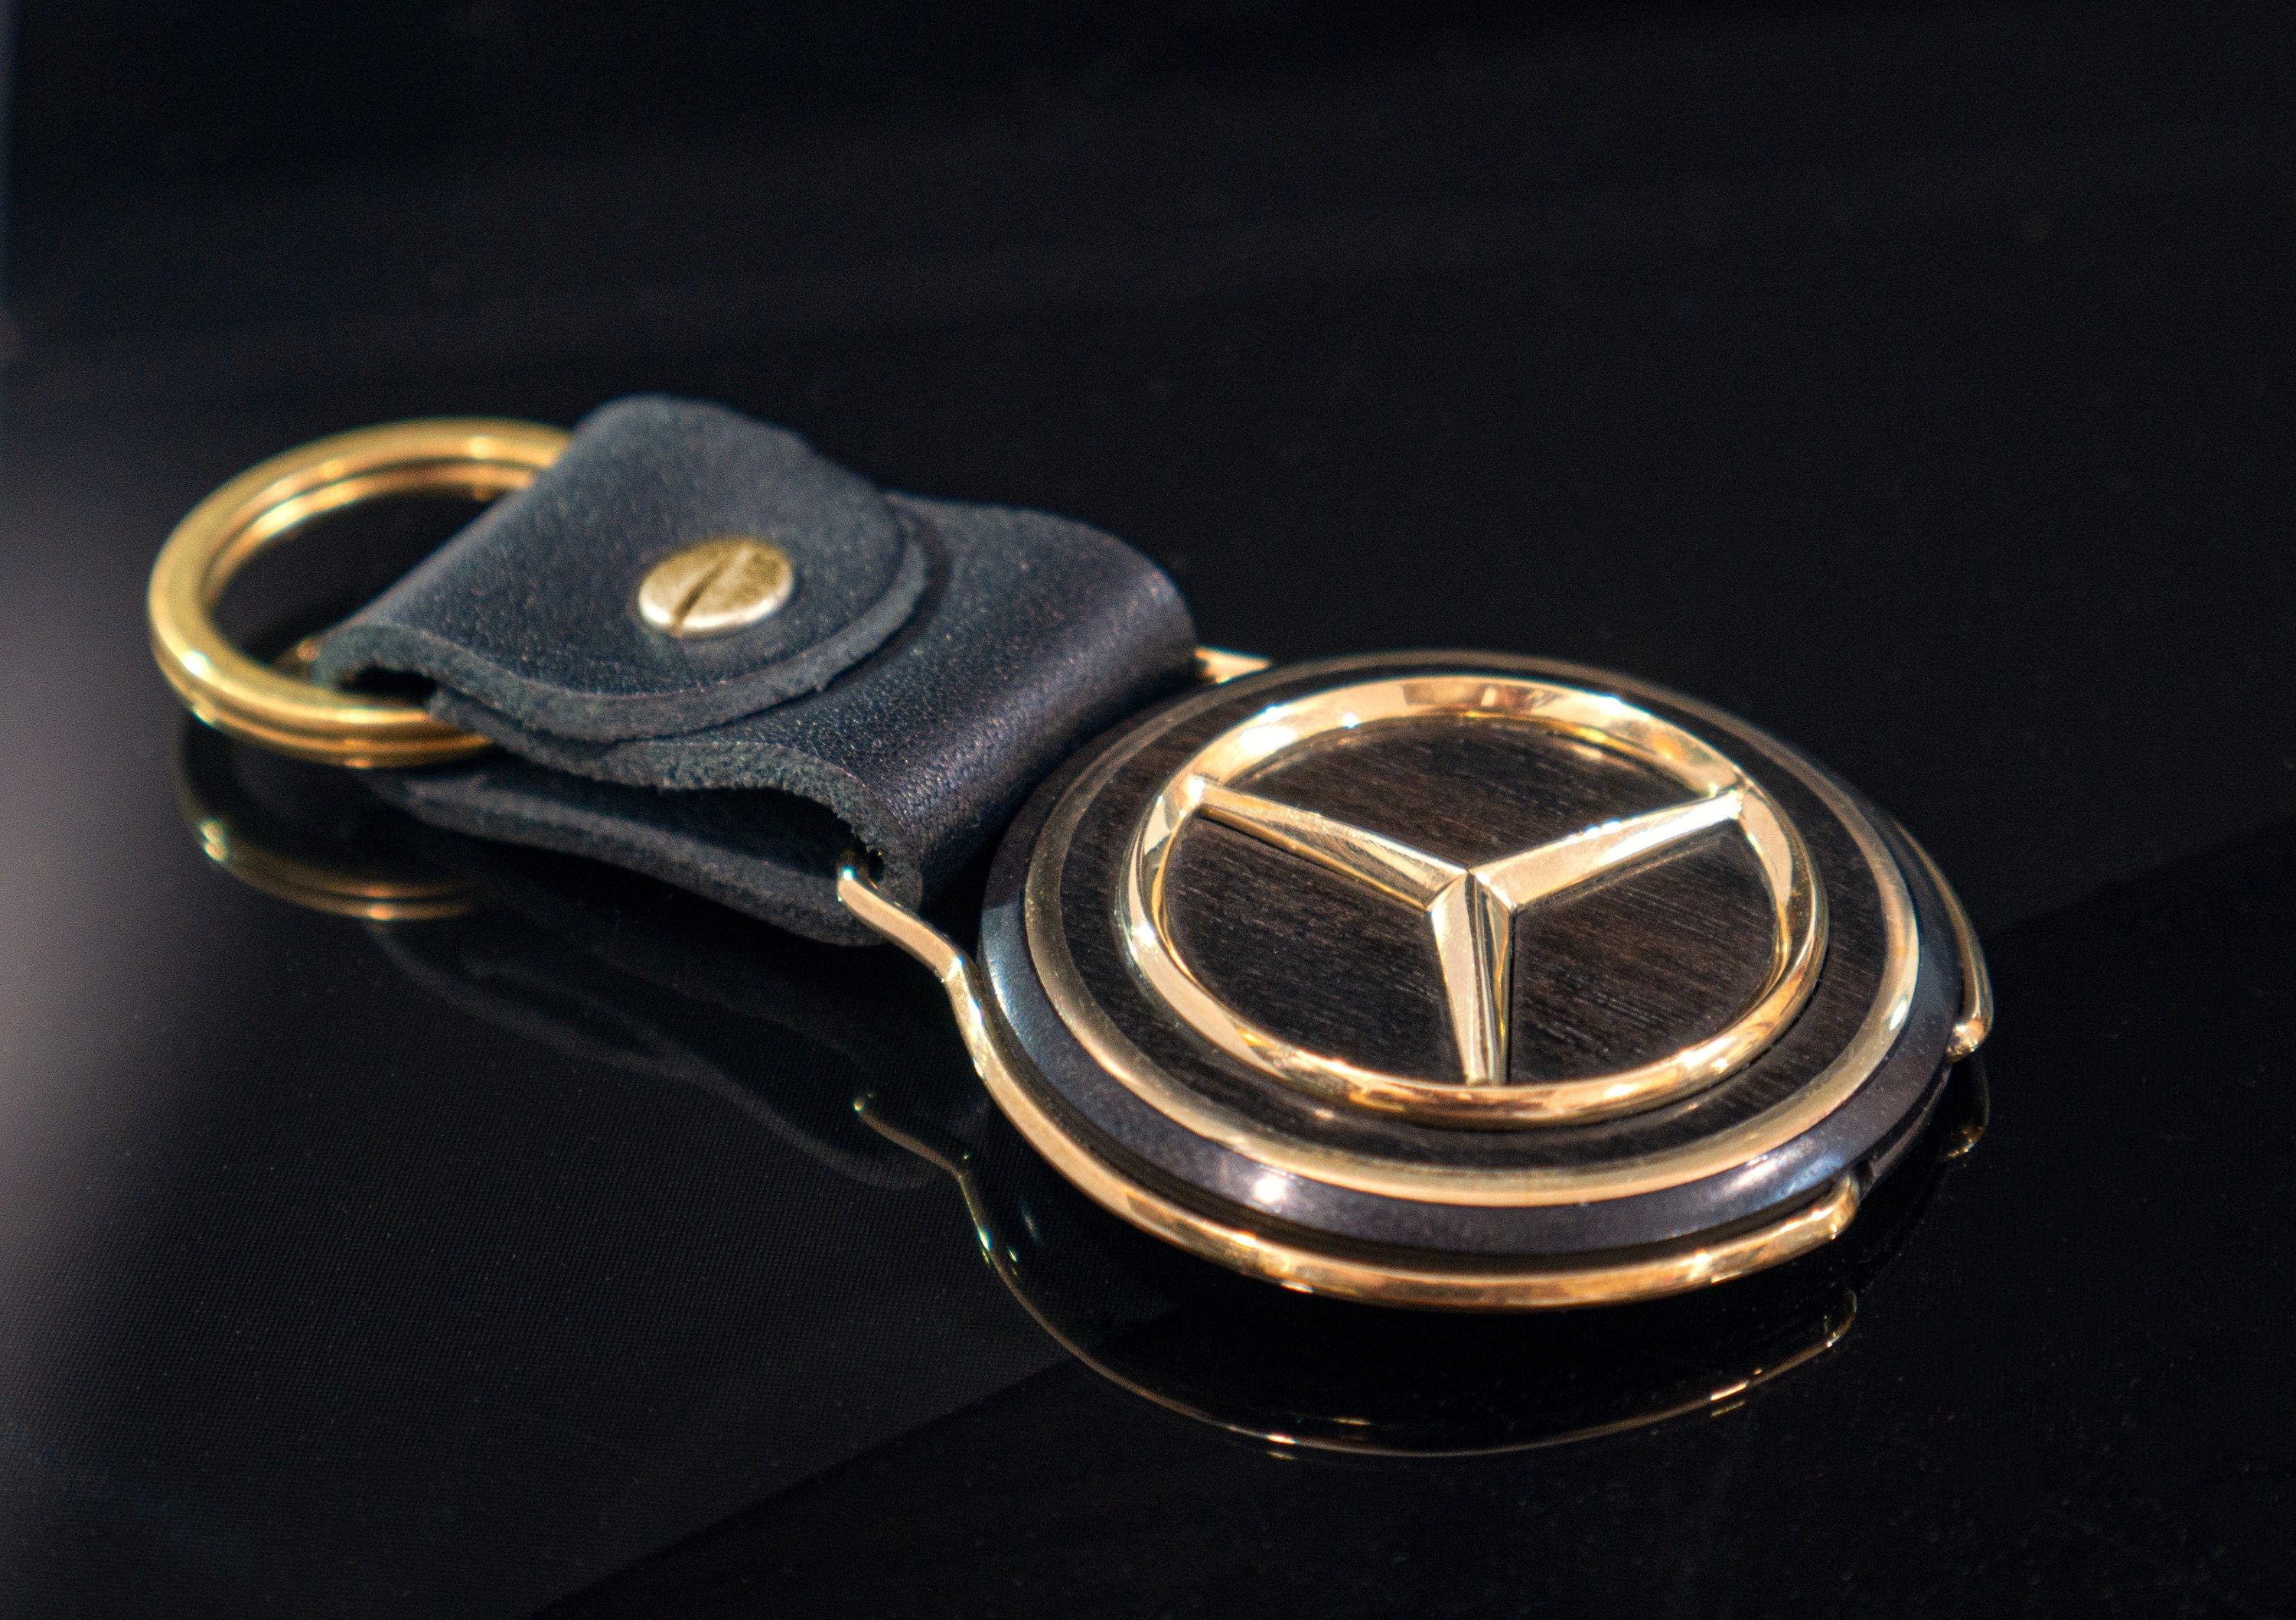 Mercedes-Benz Key Chain Star Chip